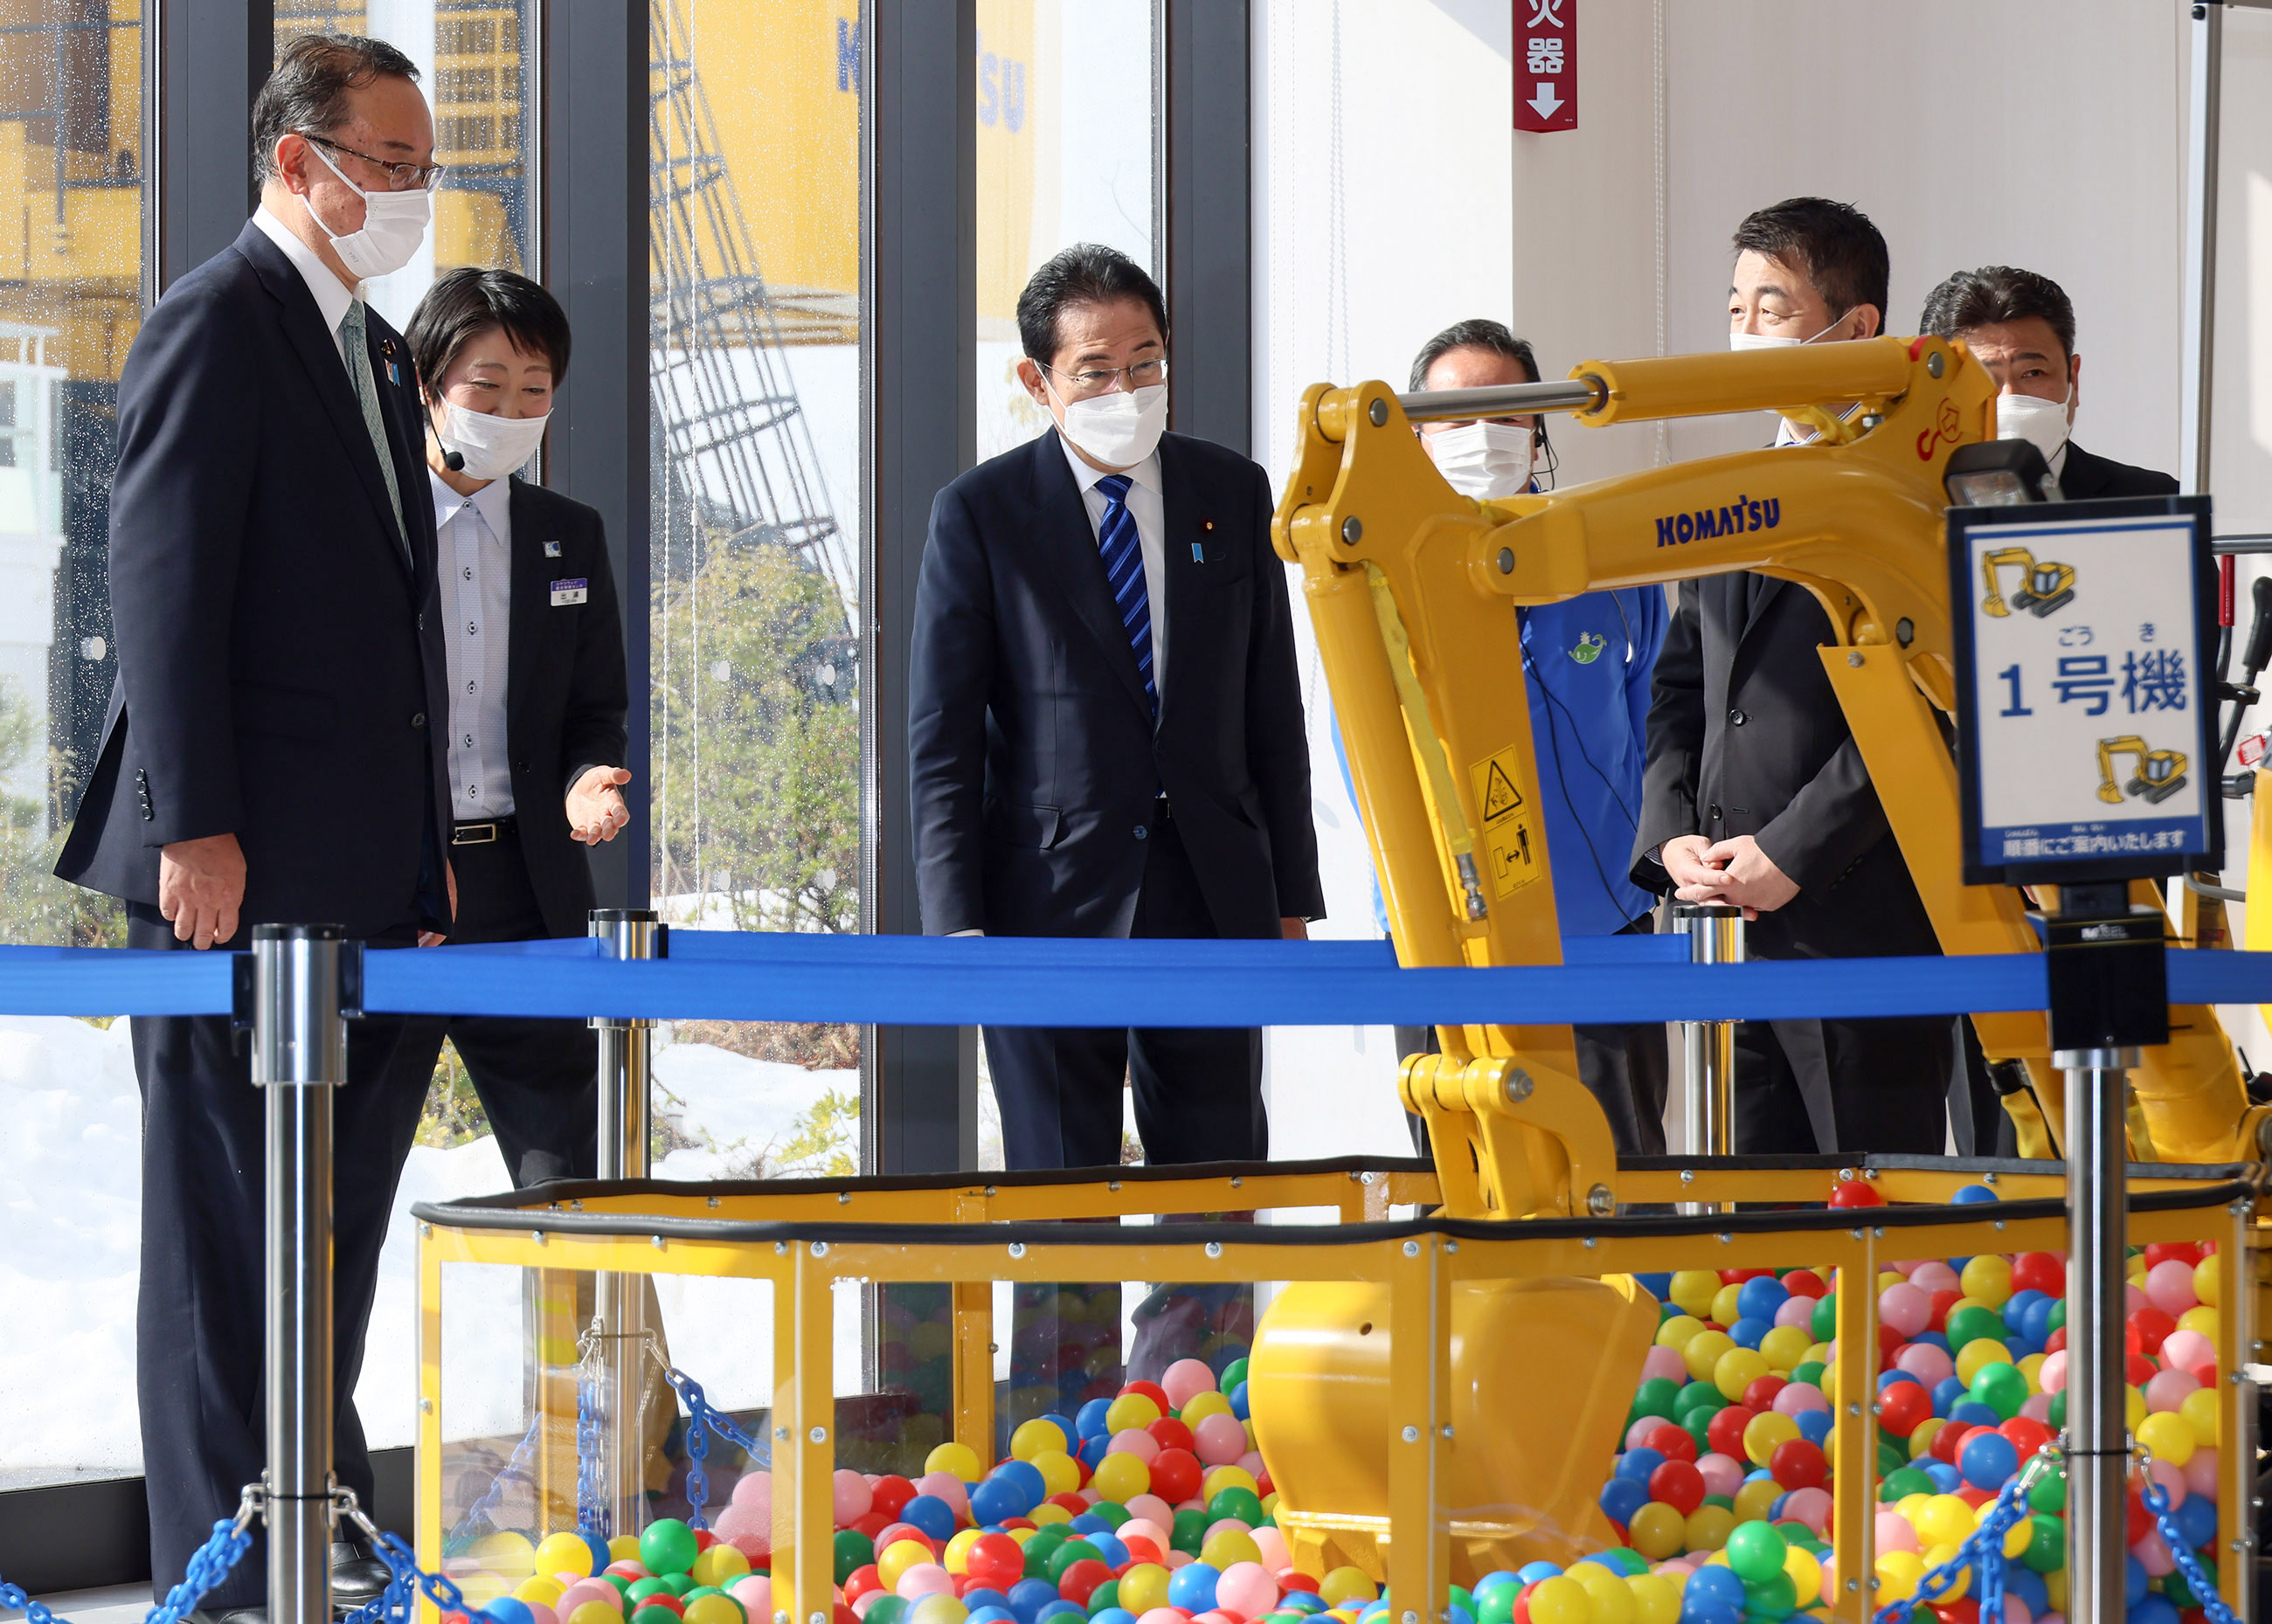 Prime Minister Kishida visiting Komatsu no Mori “Waku-Waku Komatsu Future Pavilion”